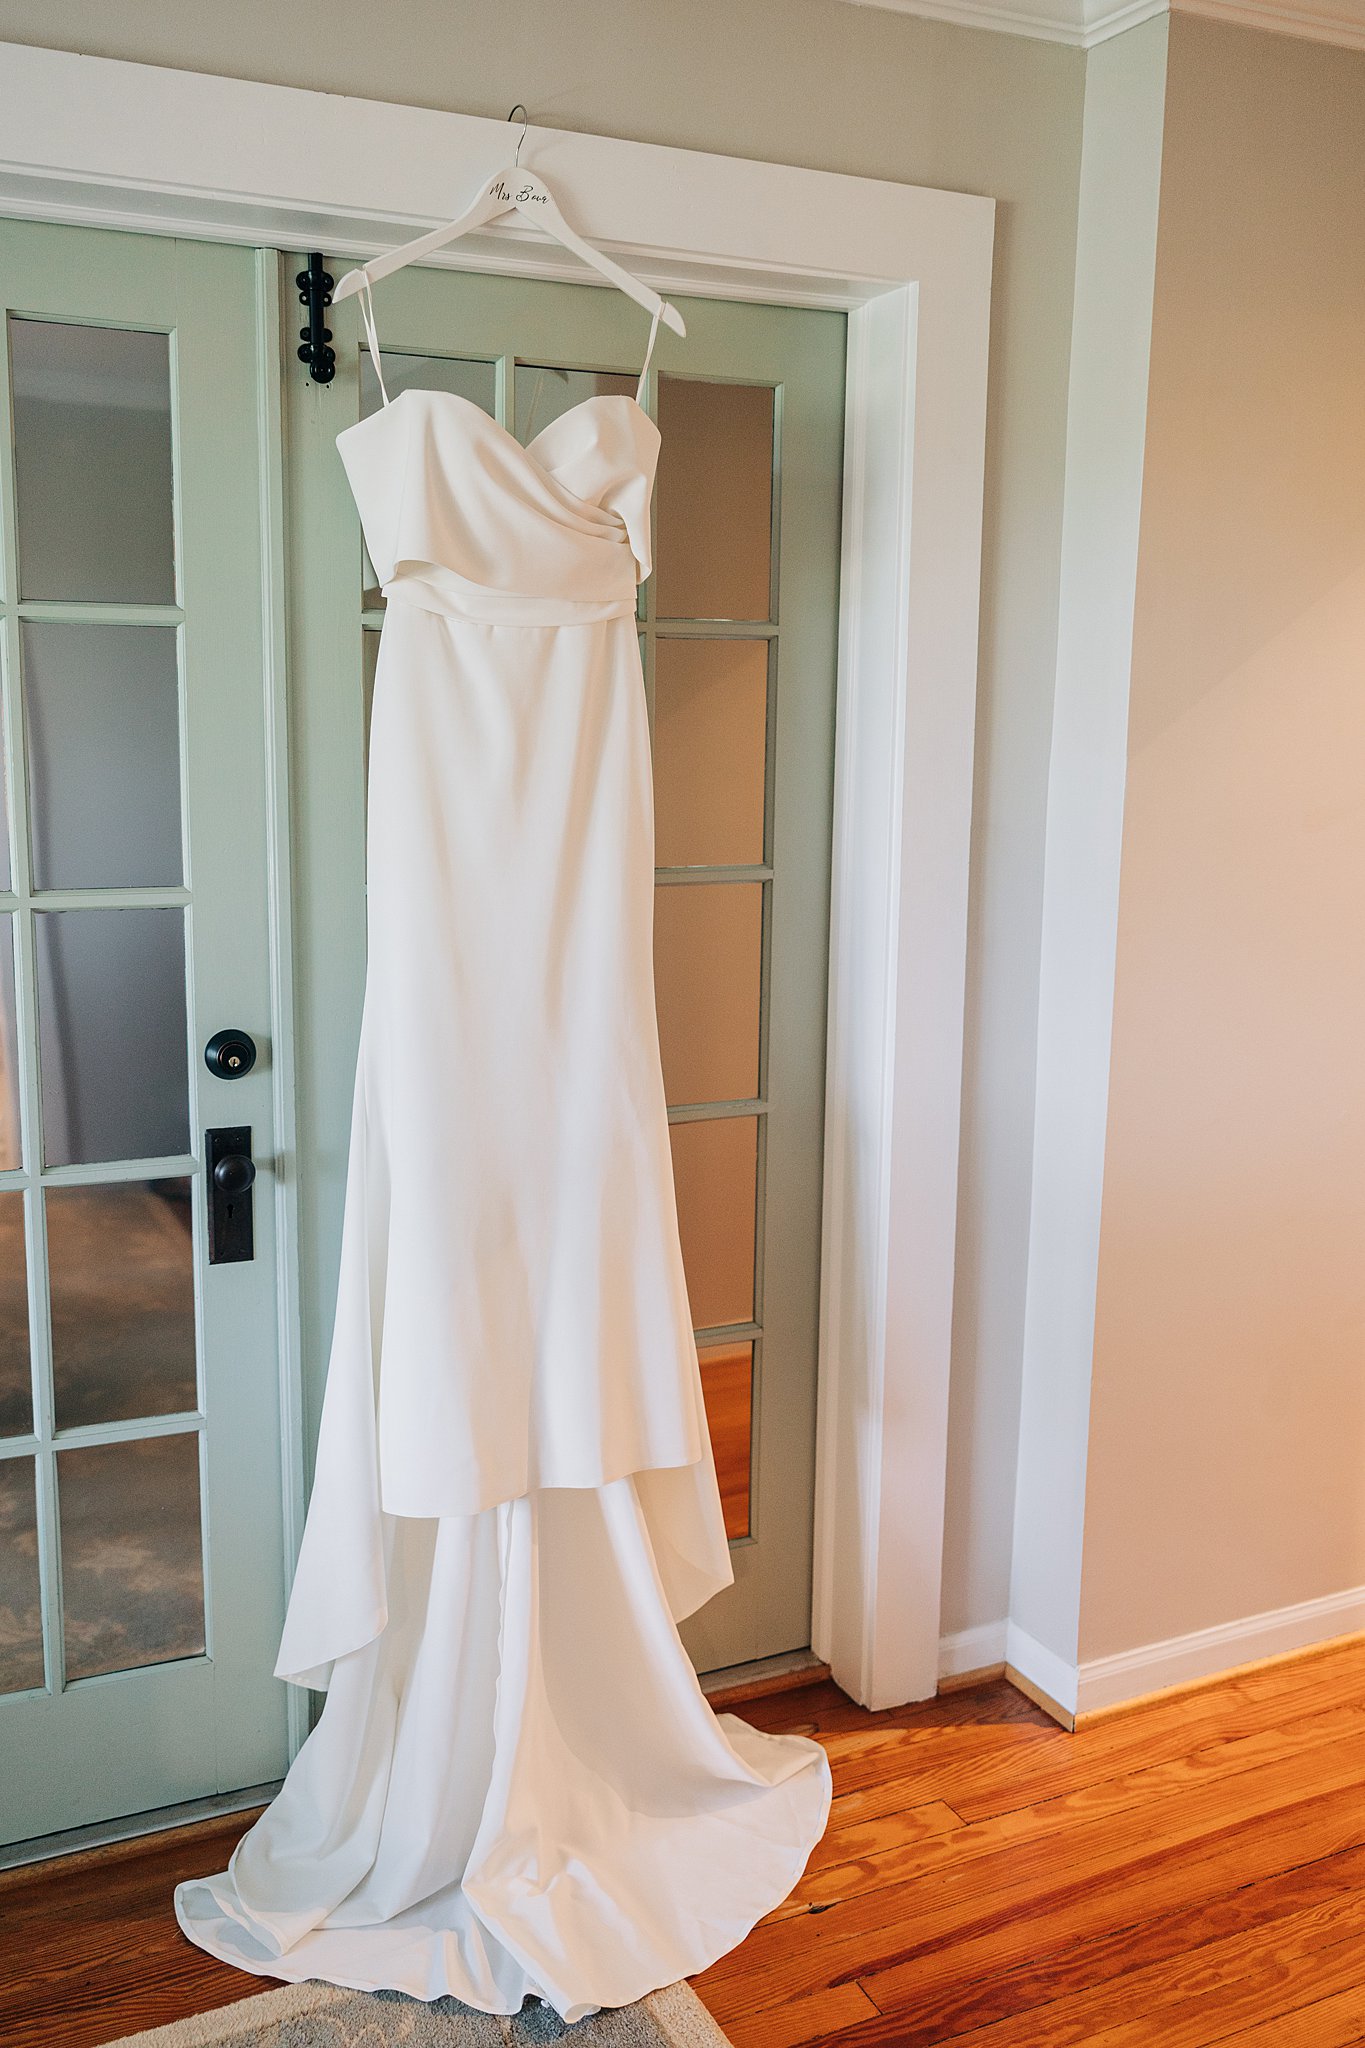 A white silk wedding dress hands in a doorway